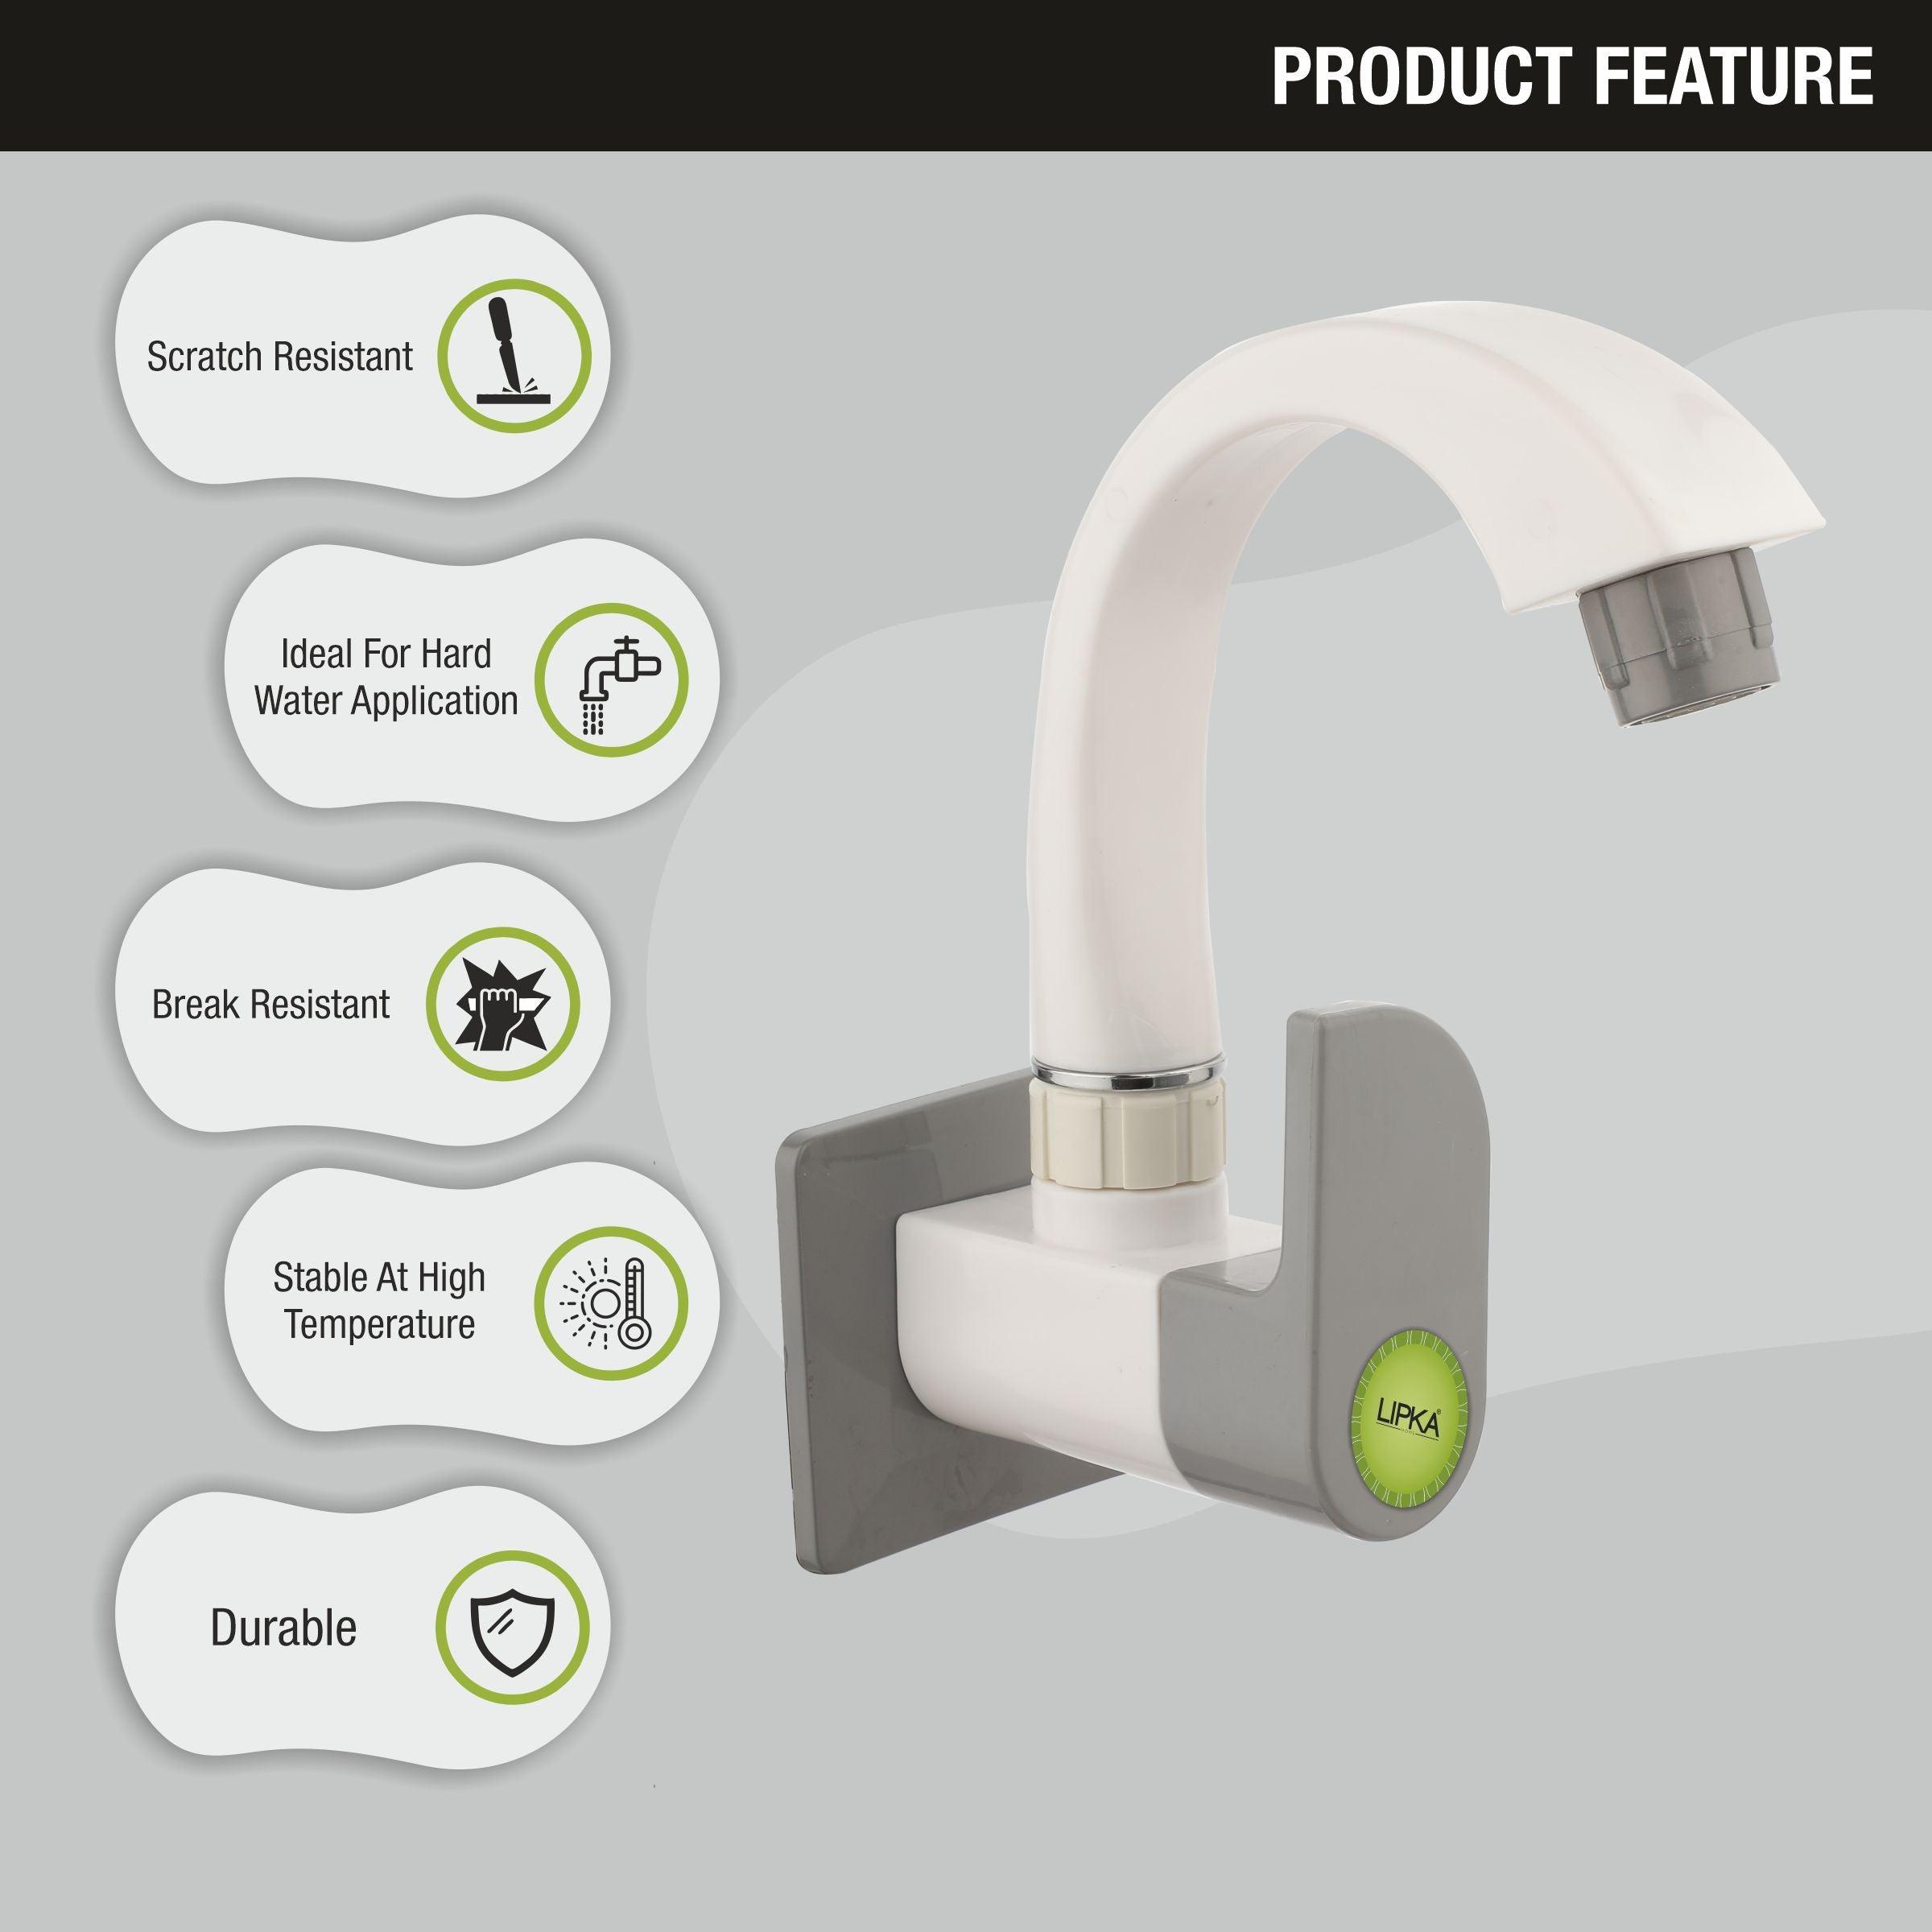 Flora Sink Tap with Swivel Spout PTMT Faucet features